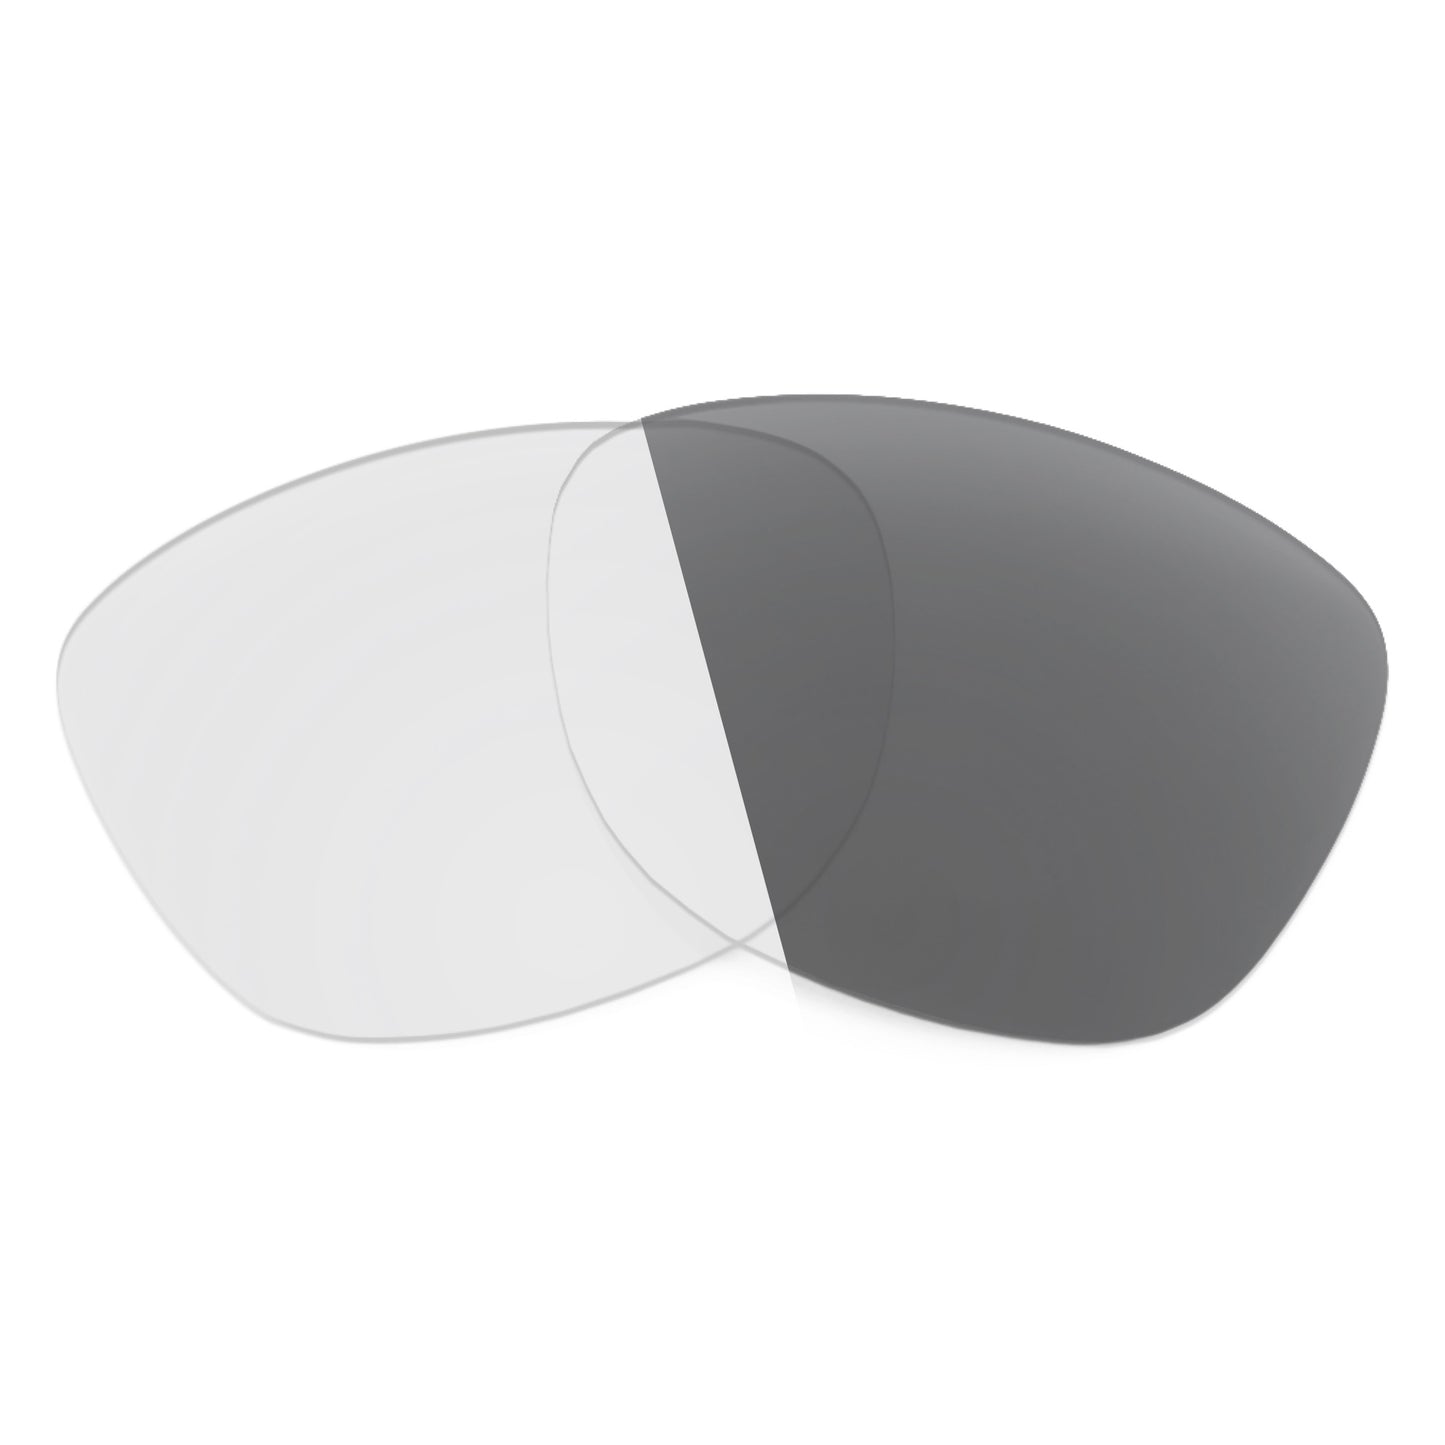 Revant replacement lenses for Oakley Crossrange R Non-Polarized Adapt Gray Photochromic